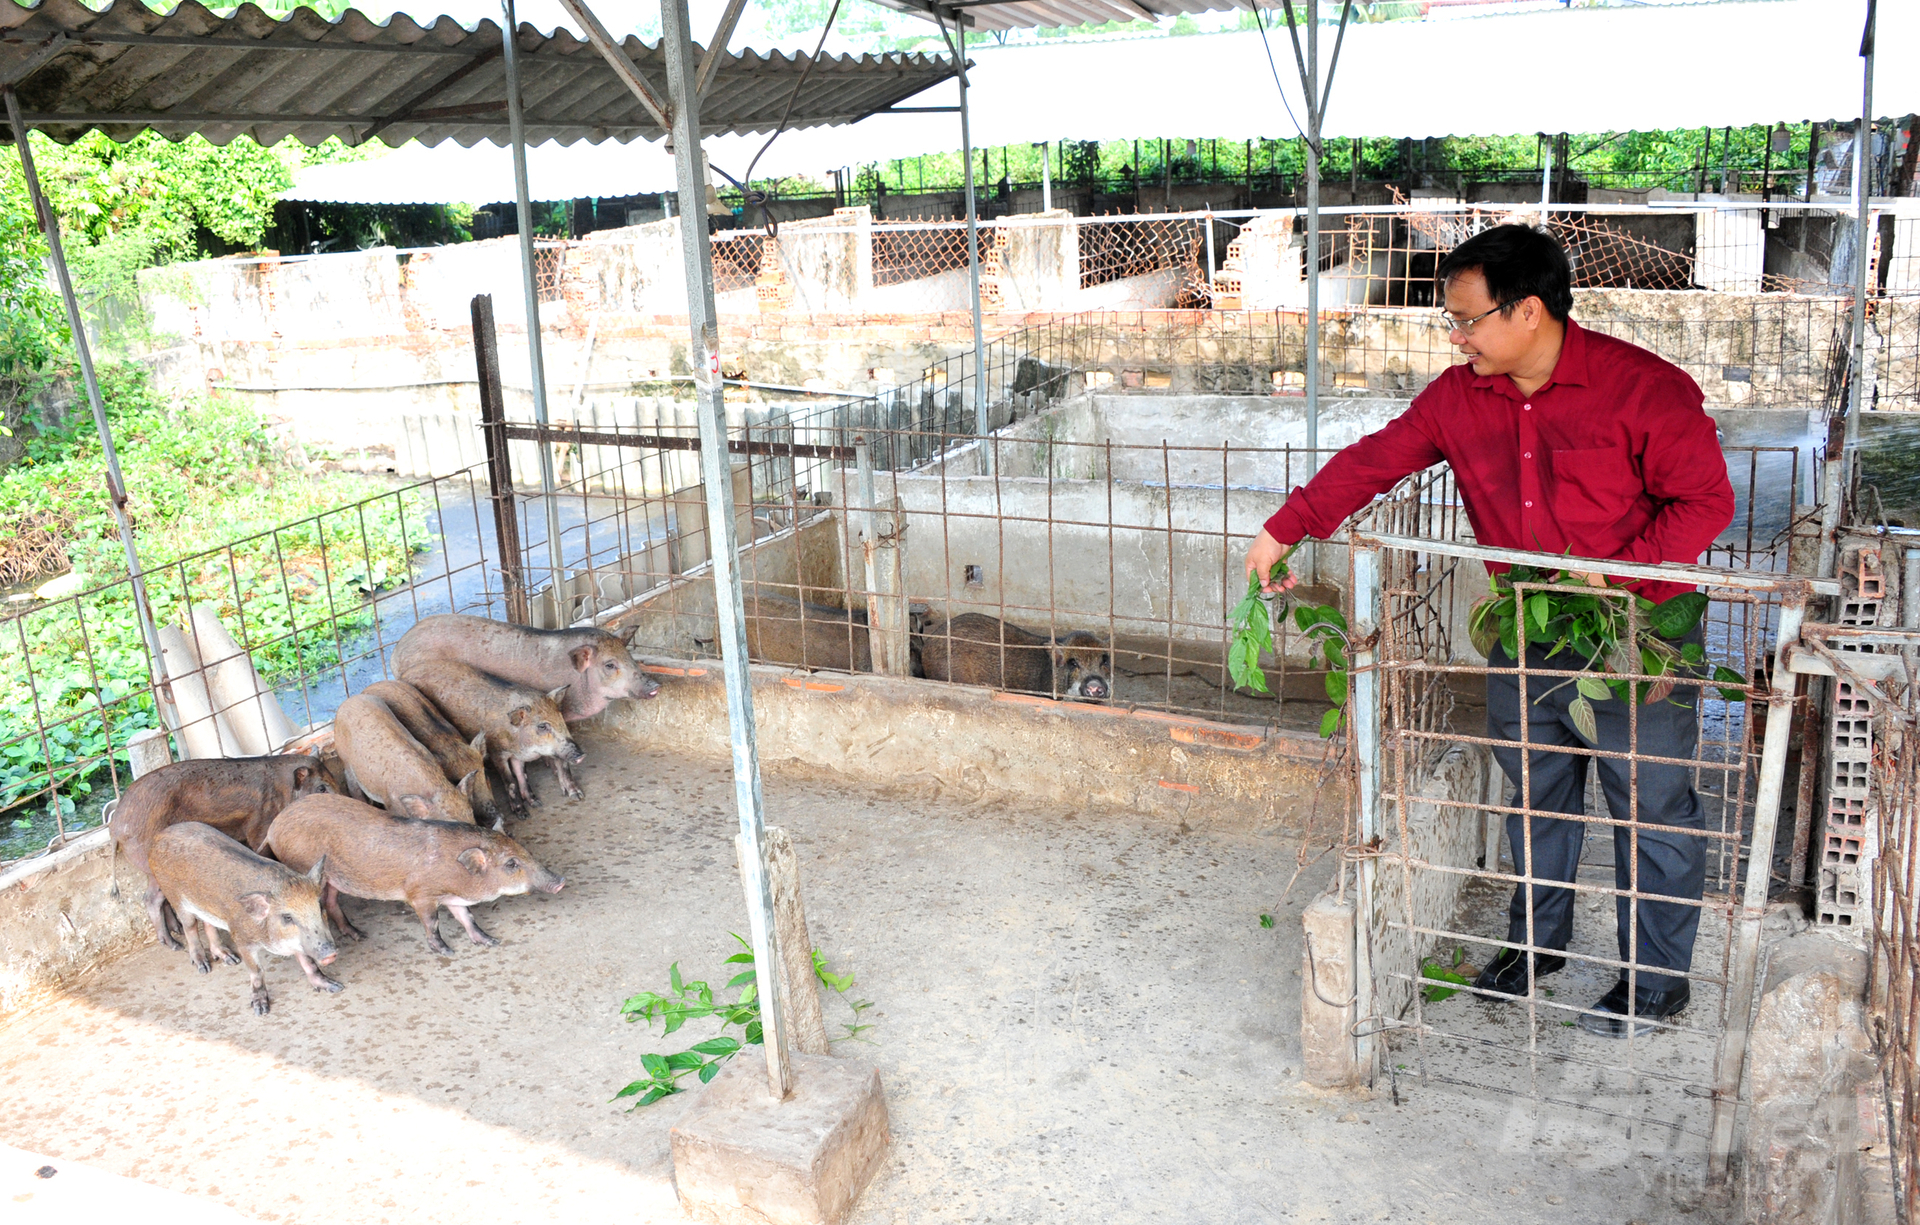 Anh Đoàn Phan Dinh, Giám đốc Công ty TNHH Thương mại và Dịch vụ Heo Rừng, cho biết hiện tại Công ty đã liên kết với gần 3.000 hộ dân nuôi heo rừng tại ĐBSCL để bao tiêu đầu ra. Ảnh: Lê Hoàng Vũ.